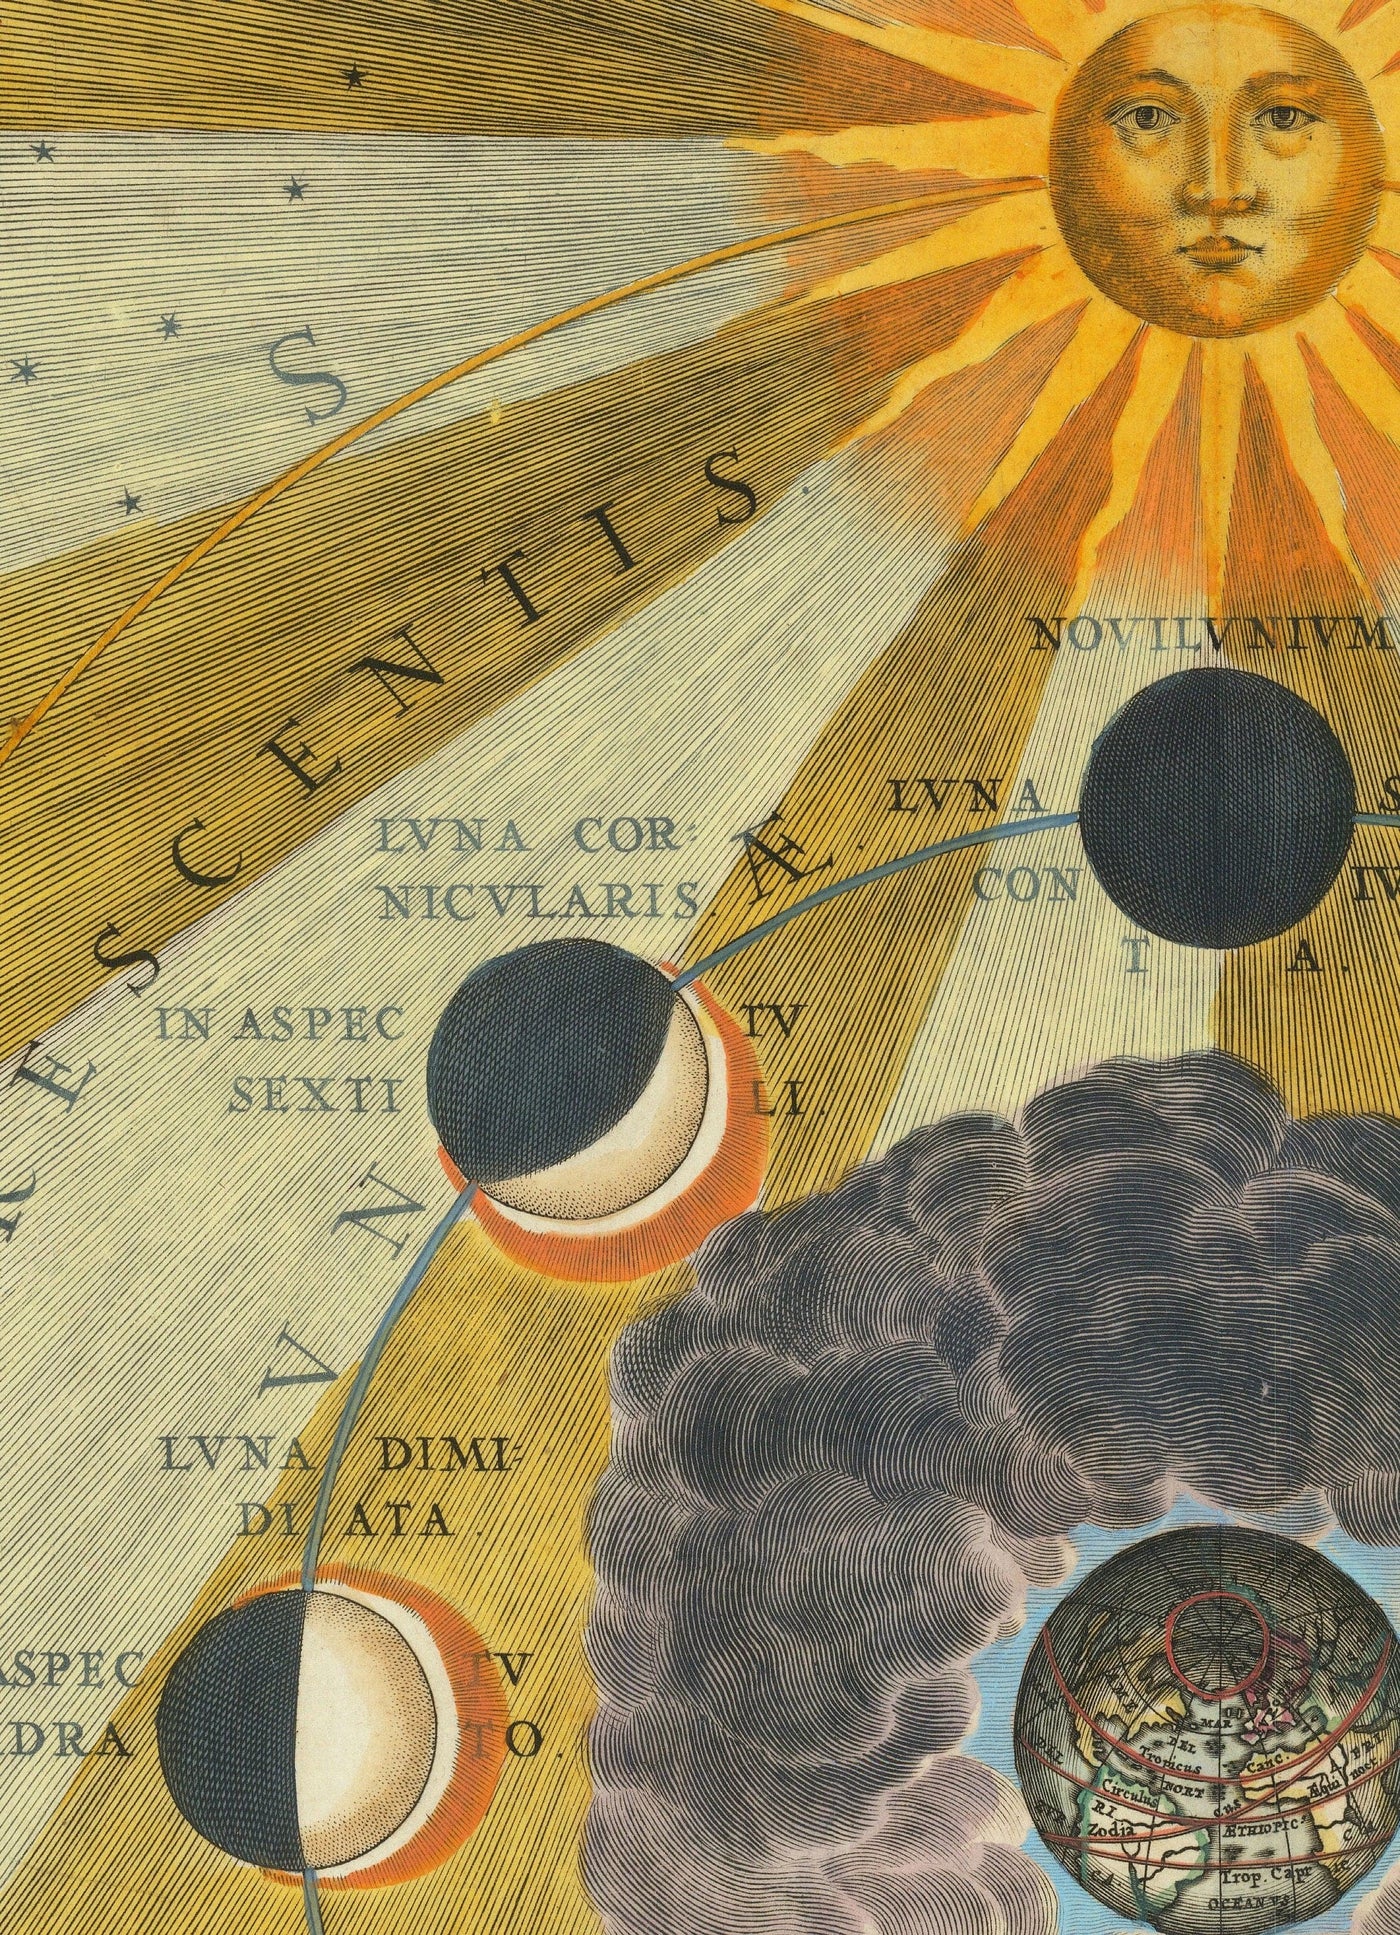 Carta antigua de las fases lunares, 1661 por Cellarius - Ciclos lunares, educación sobre el movimiento planetario temprano